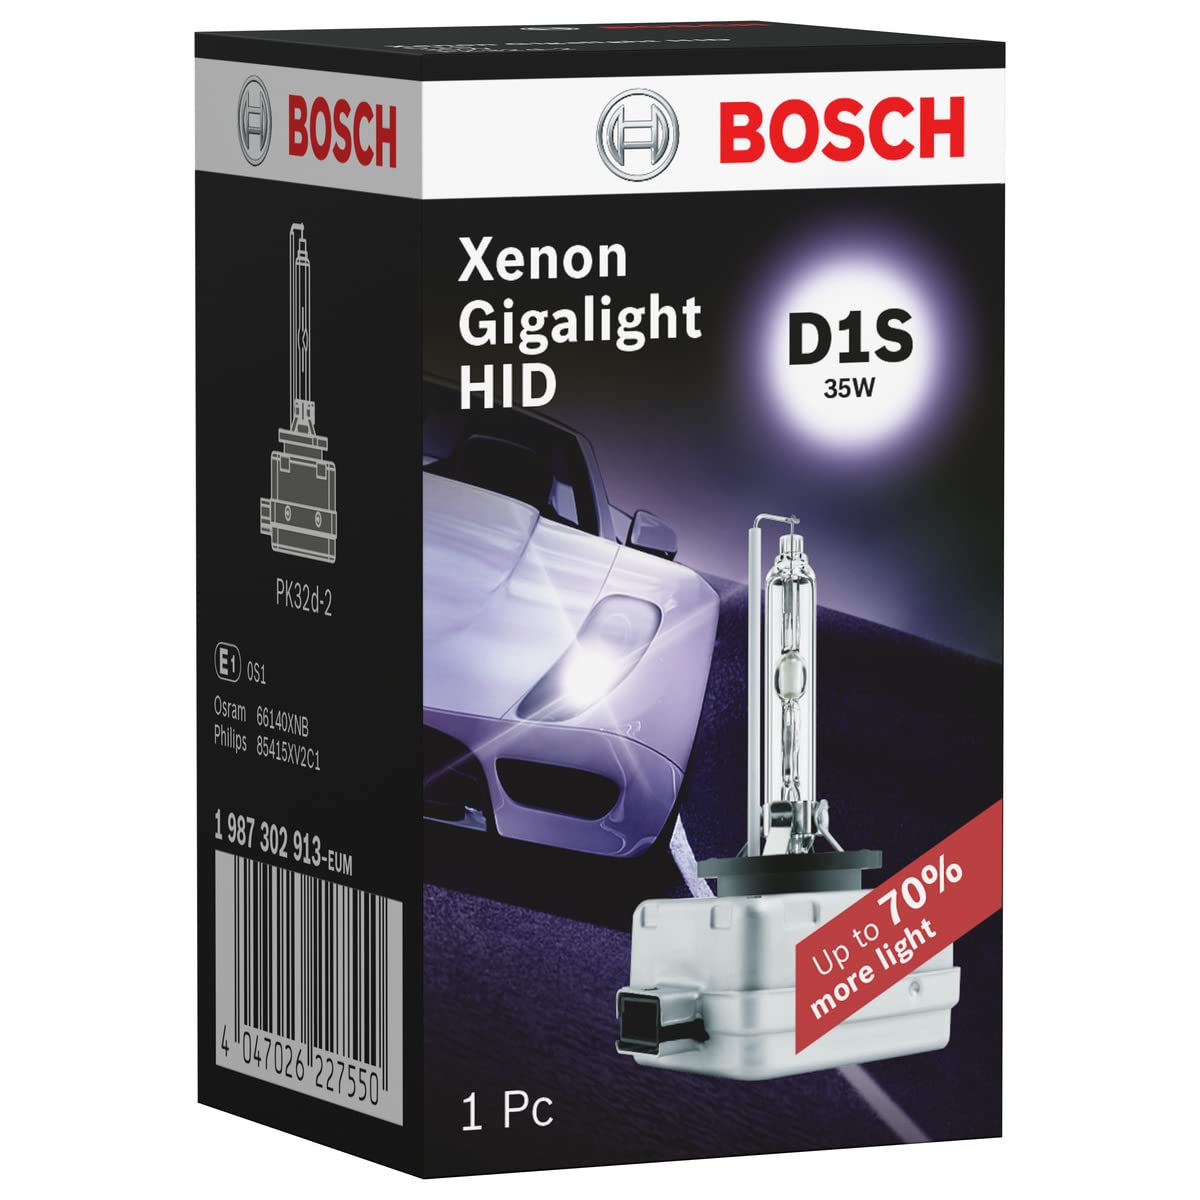 Bosch D1S Xenon Gigalight HID Lampe - 35W PK32d-2 - 1 Stück von Bosch Automotive